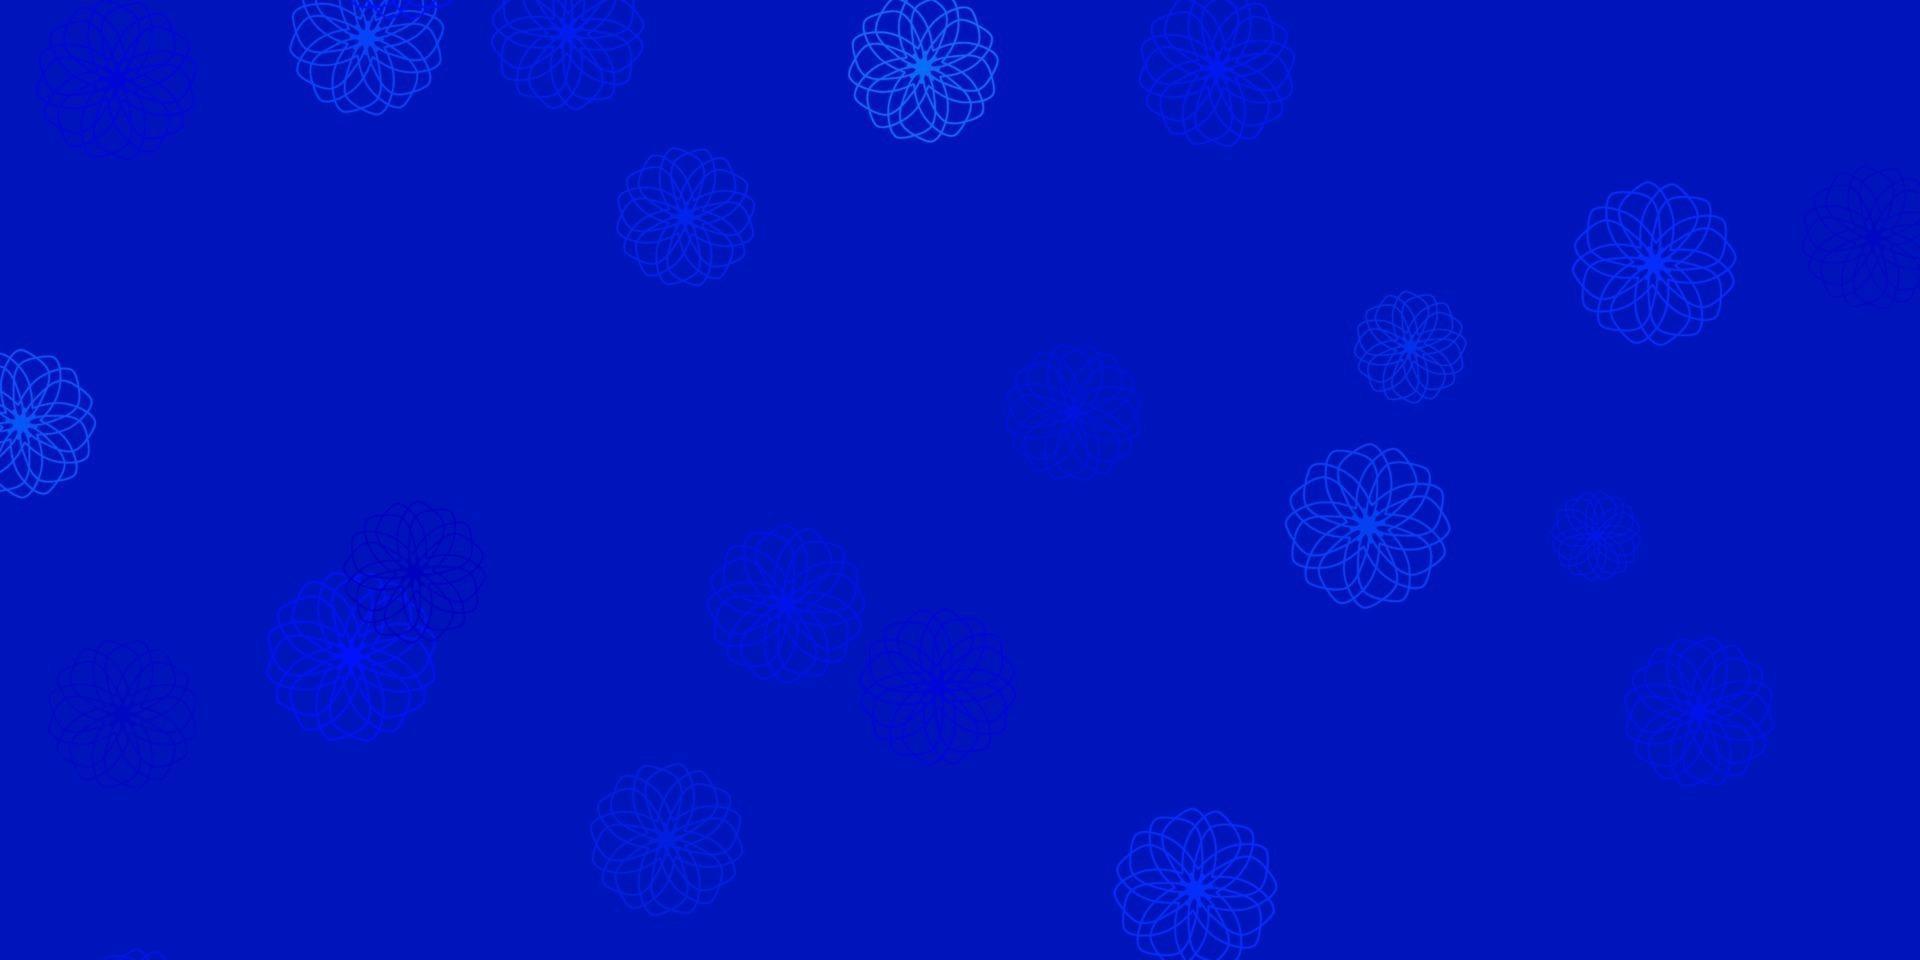 hellblauer Vektorhintergrund mit Punkten. vektor